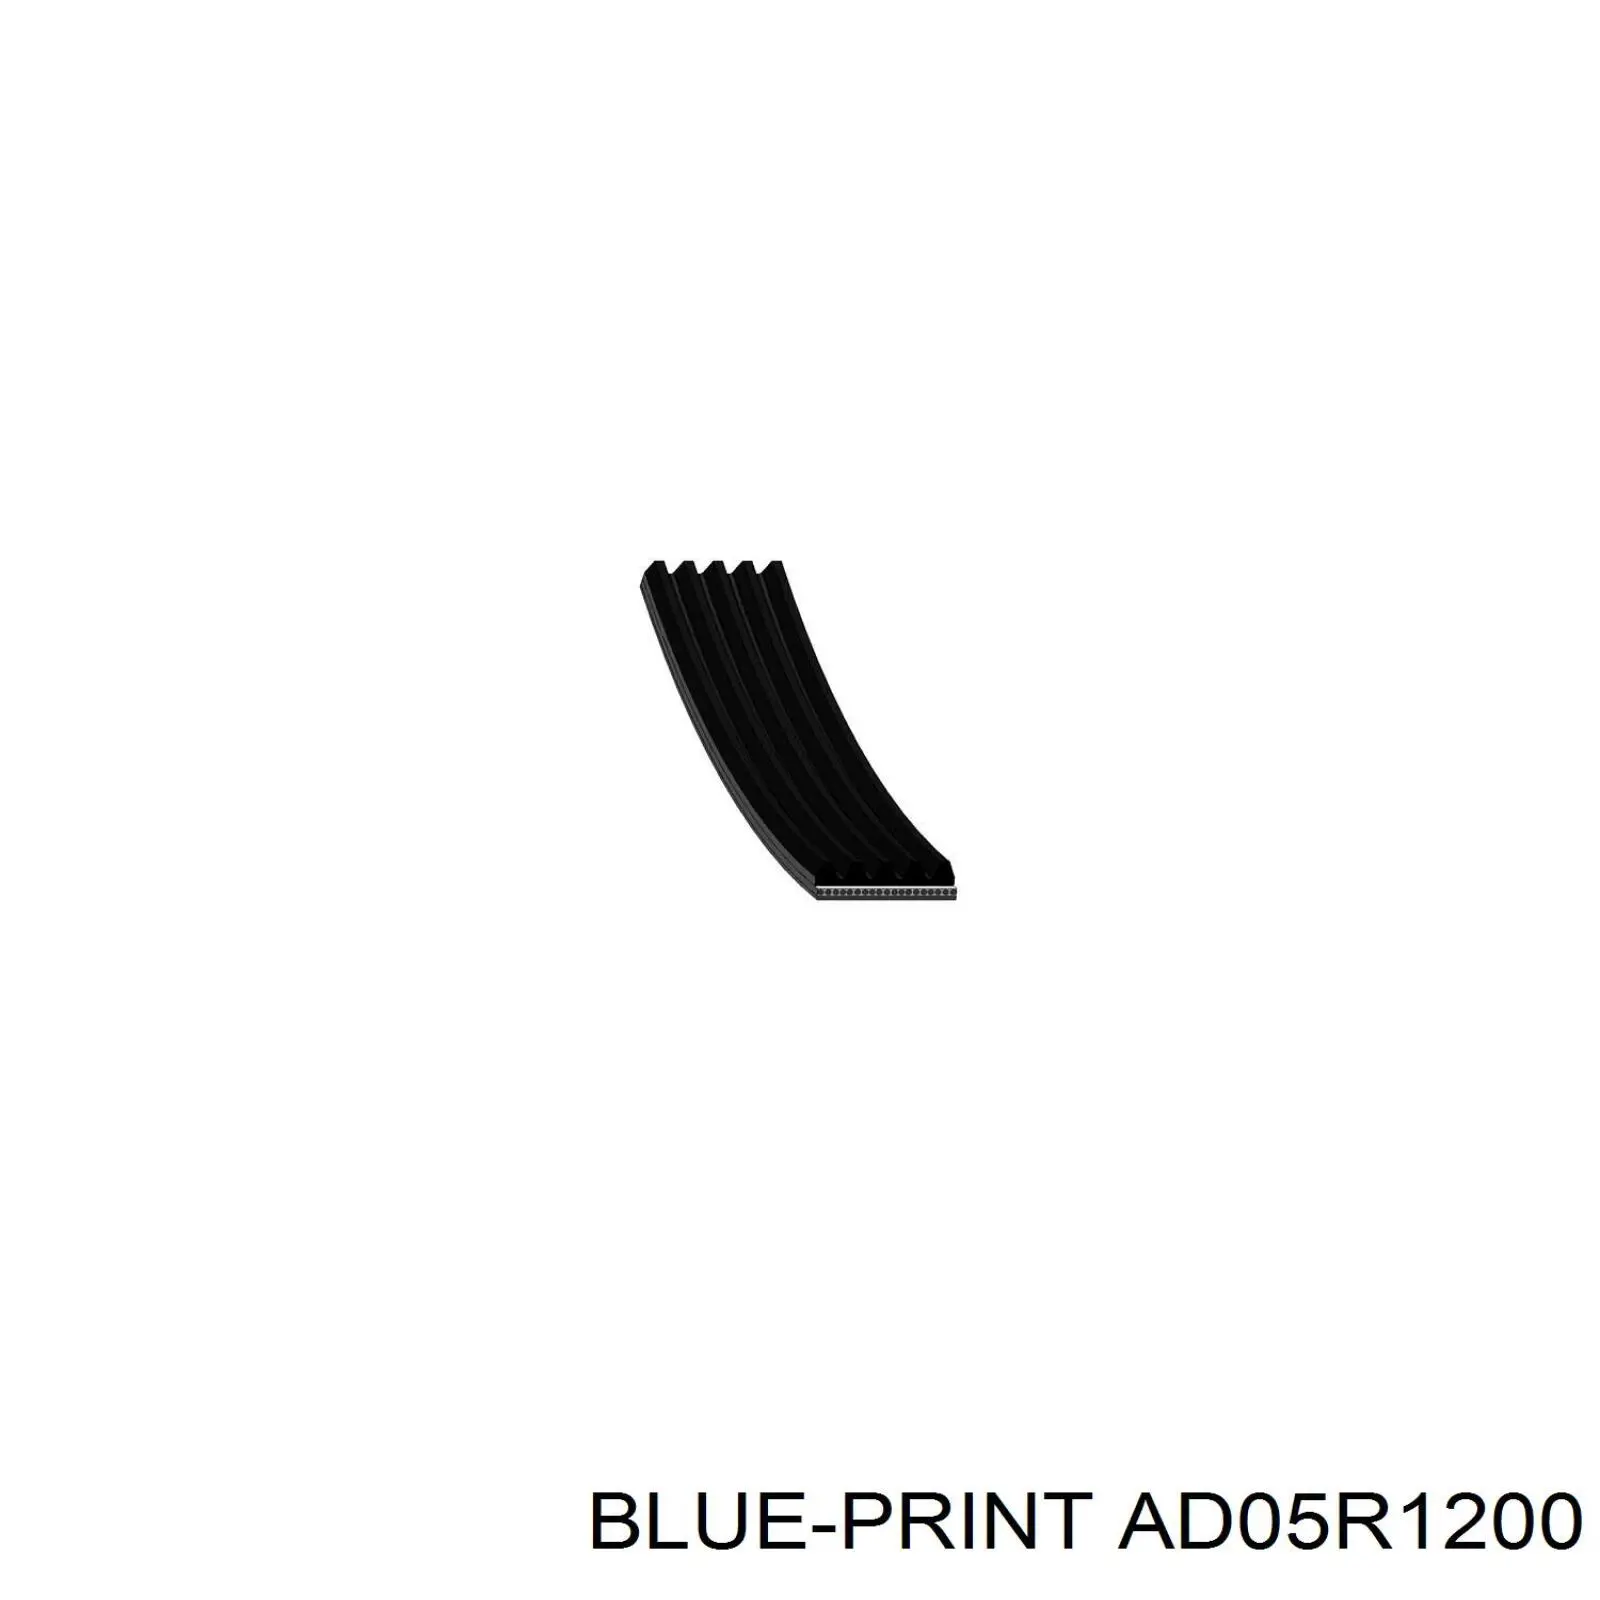 AD05R1200 Blue Print correa trapezoidal